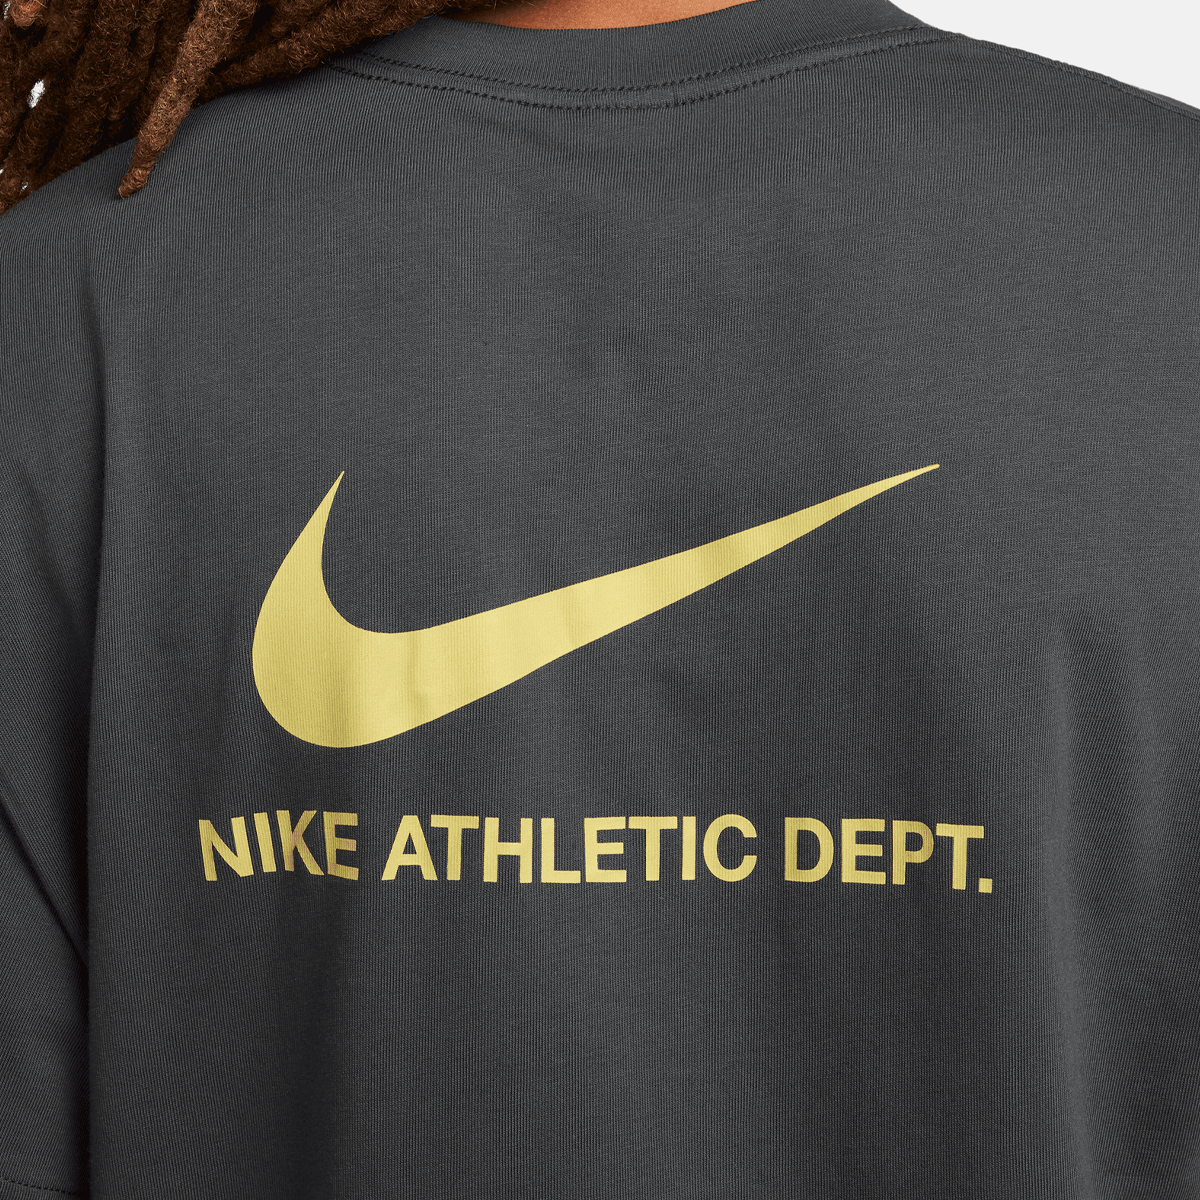 Nike Sportswear Graphic T-shirt T-shirts Heren anthracite maat: S beschikbare maaten:S